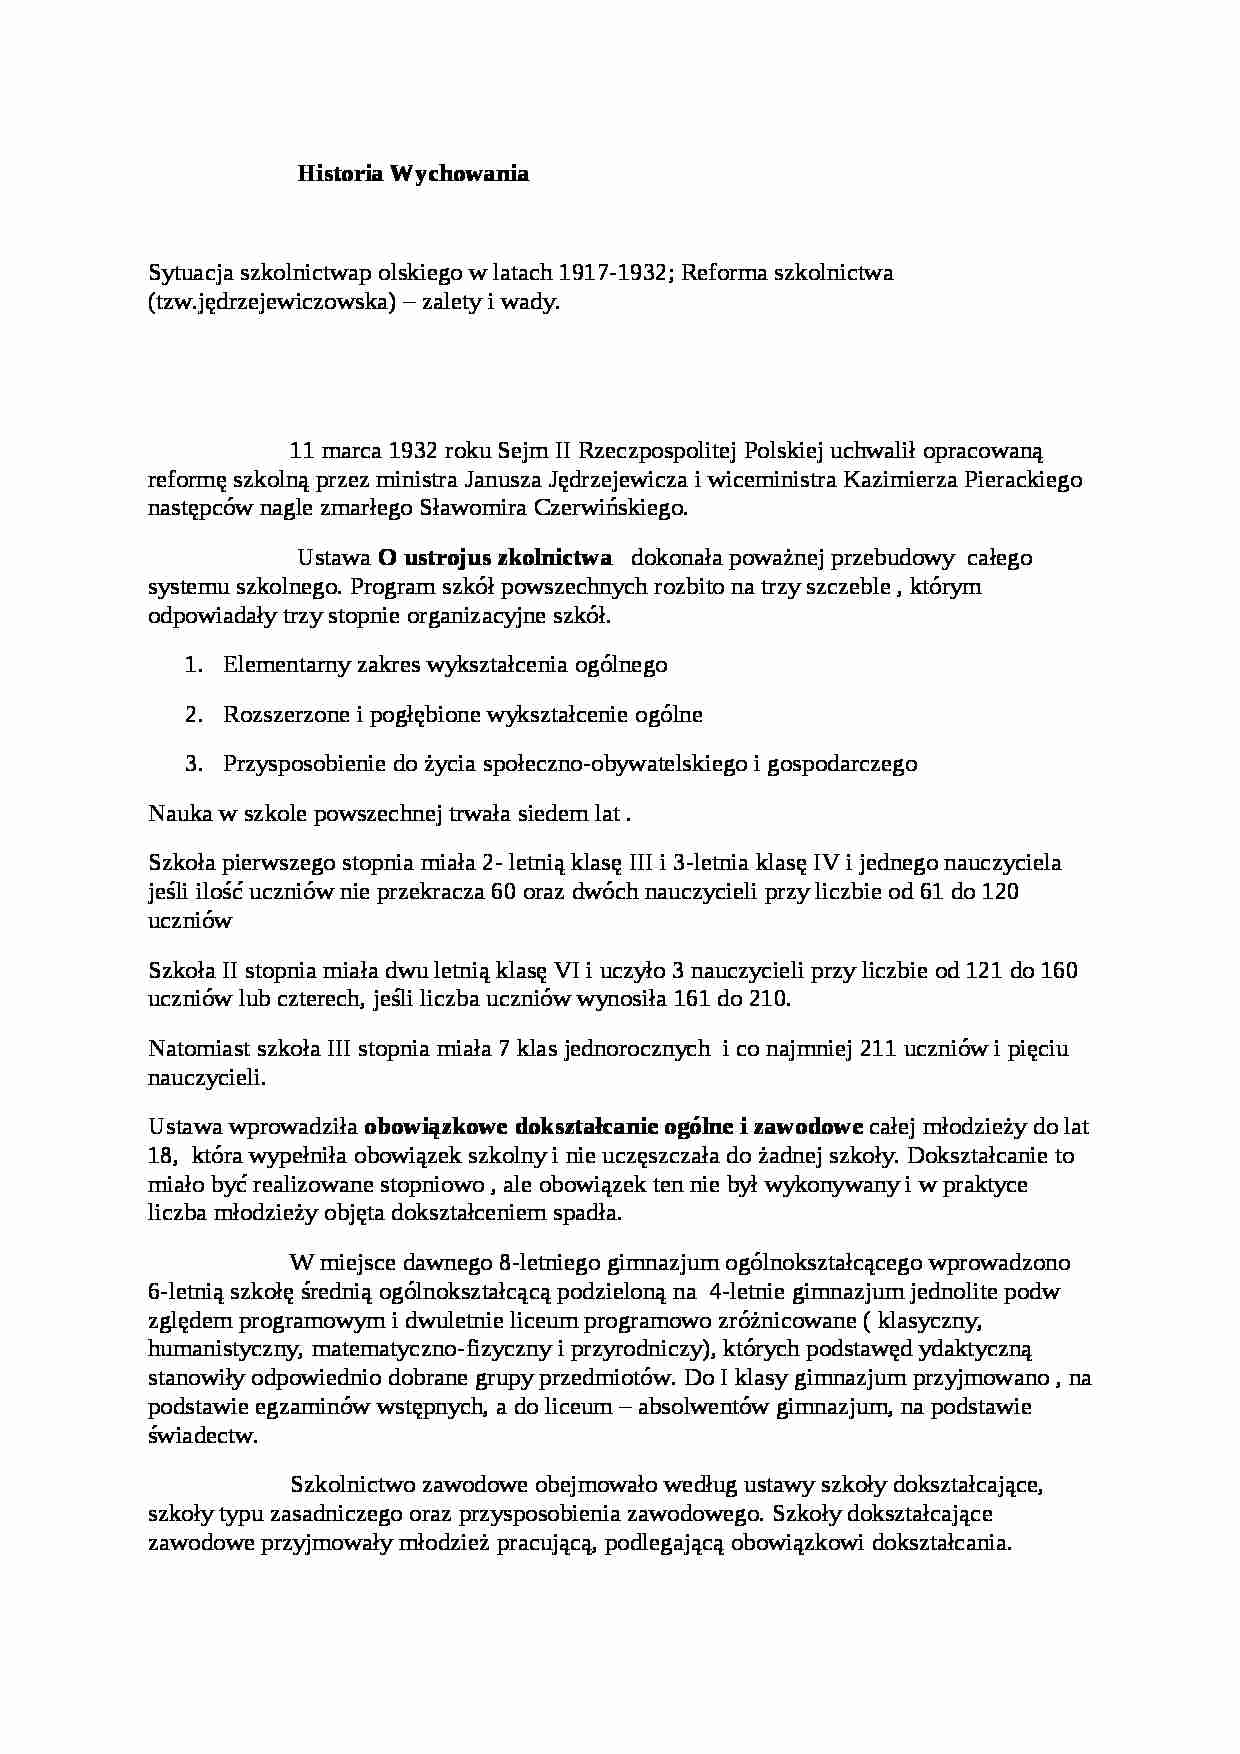 Historia wychowania-sytuacja szkolnictwa polskiego w latach 1917-1932  - strona 1